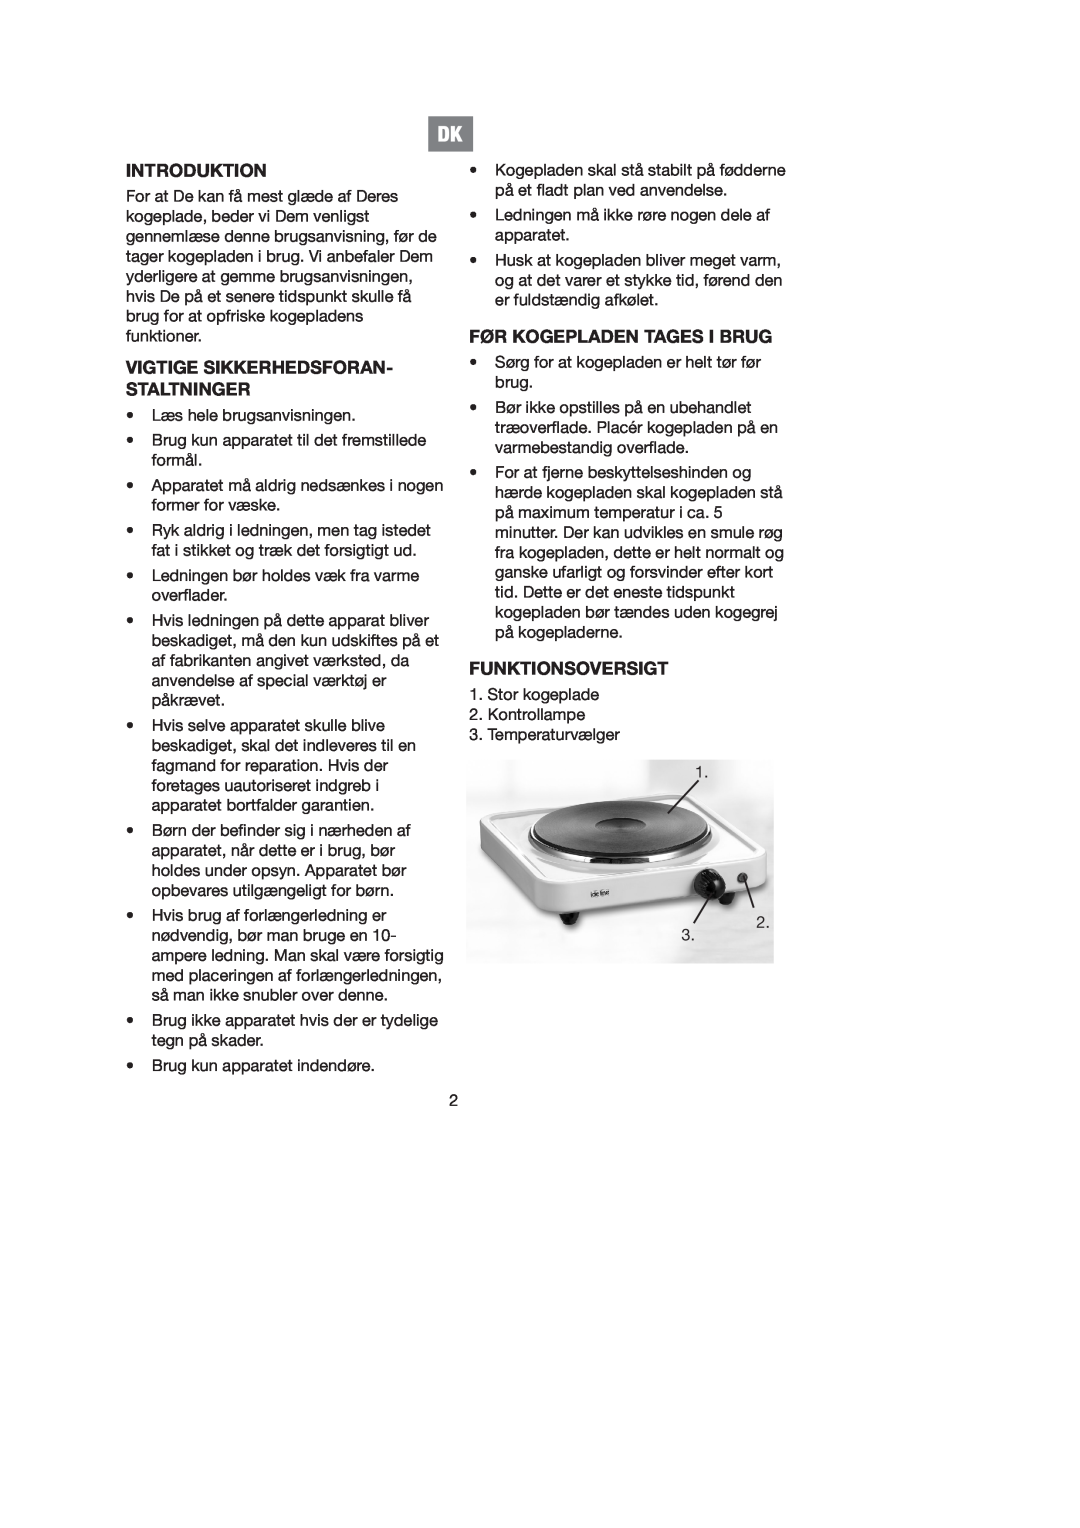 Melissa 750-026 manual Introduktion, Vigtige Sikkerhedsforan- Staltninger, Før Kogepladen Tages I Brug, Funktionsoversigt 